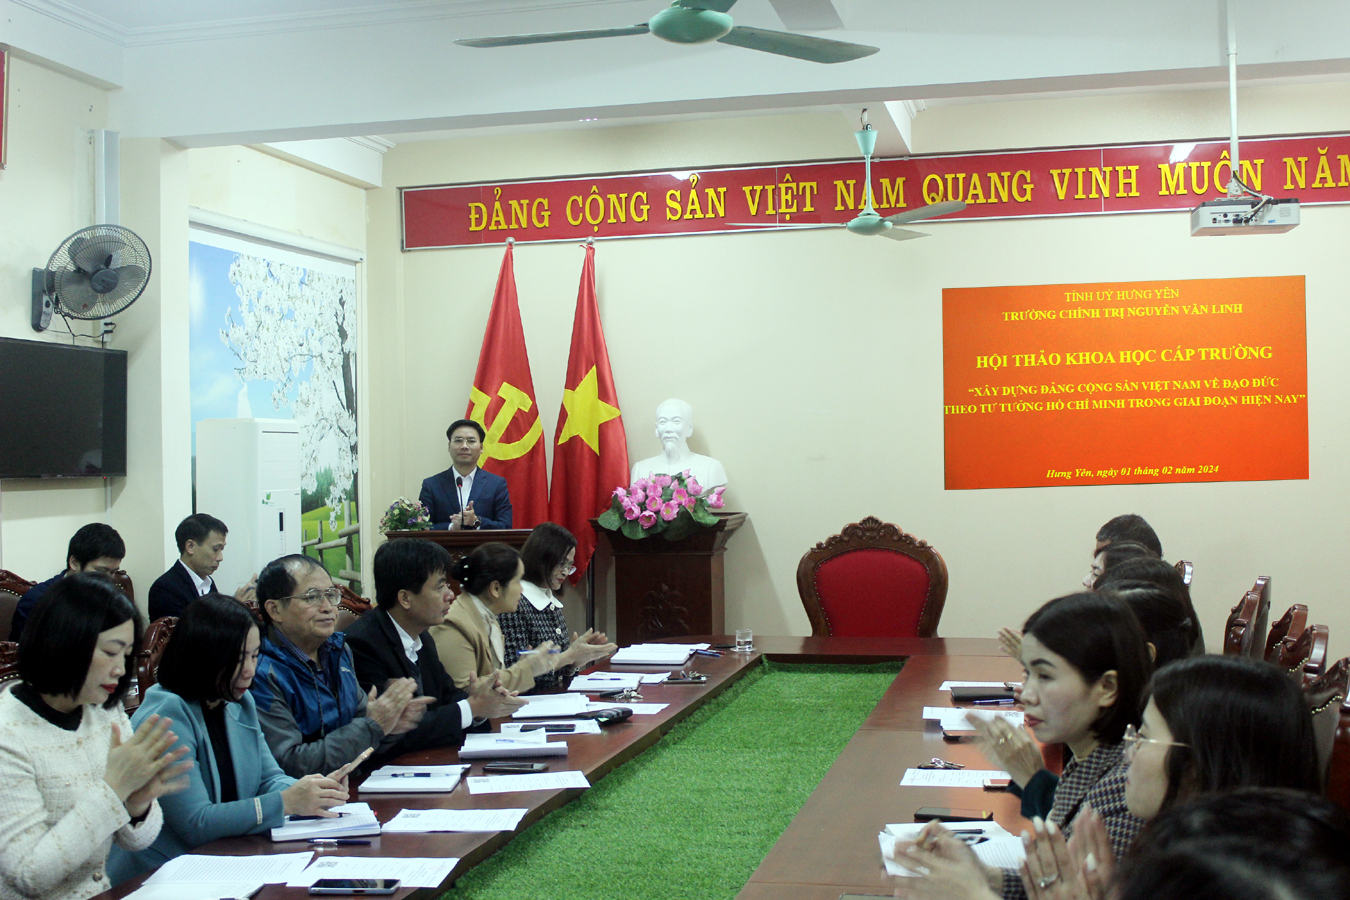 Hội thảo Khoa học cấp trường “Xây dựng Đảng Cộng sản Việt Nam về đạo đức theo tư tưởng Hồ Chí Minh trong giai đoạn hiện nay”